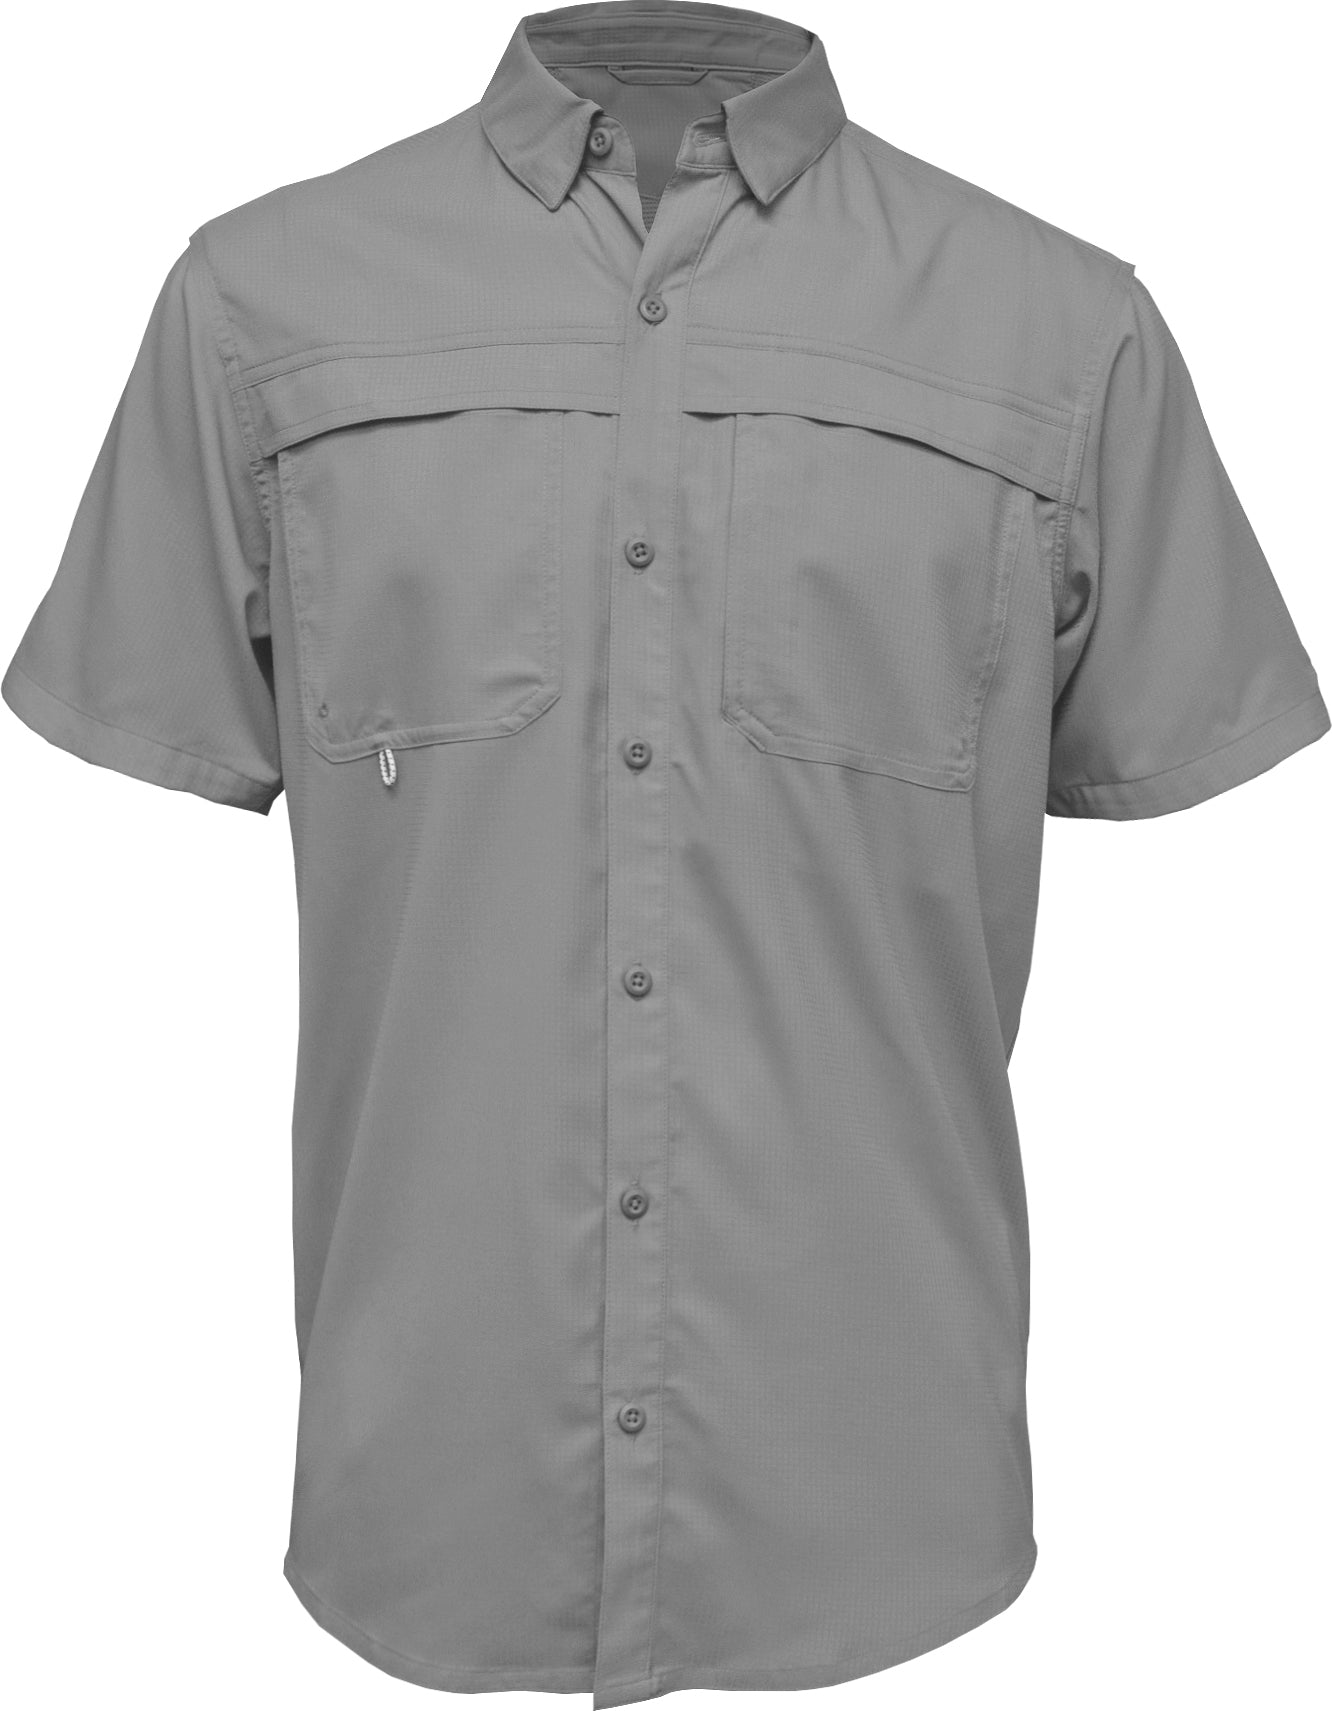 Men's Short Sleeve SoWal TFS – Mojo Sportswear Company